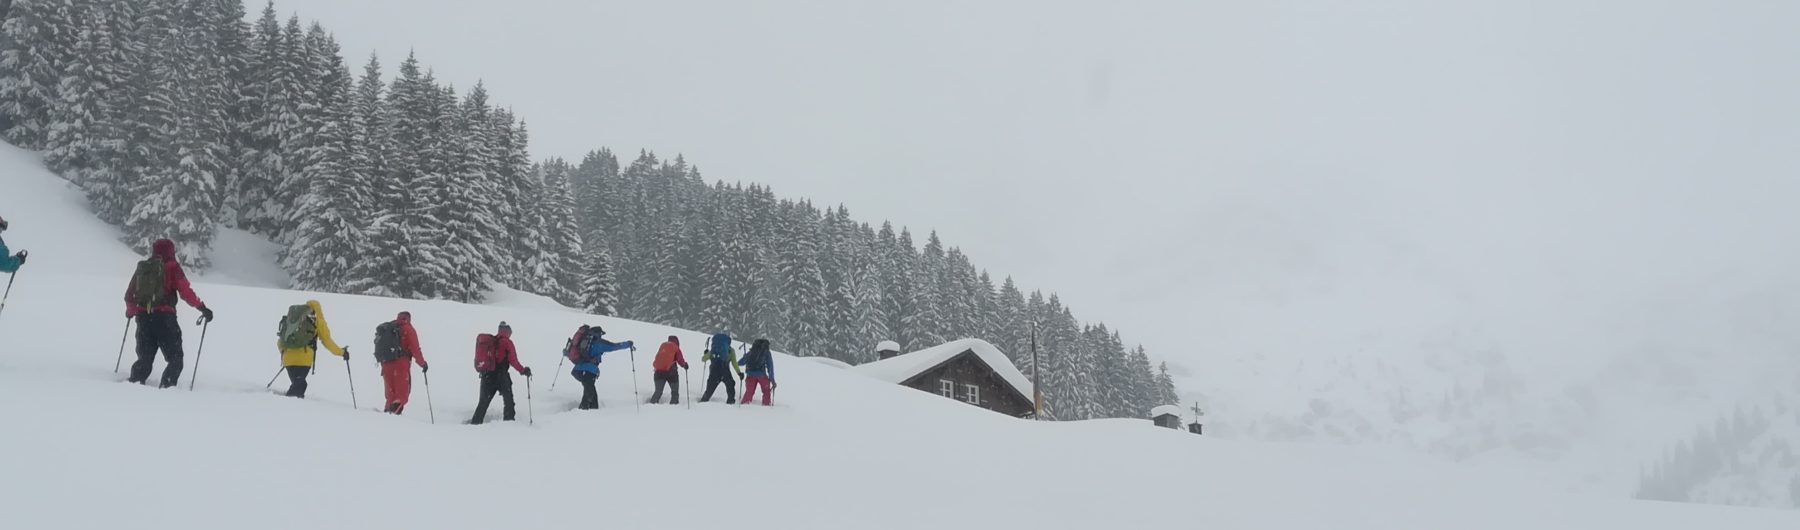 skitourengeher